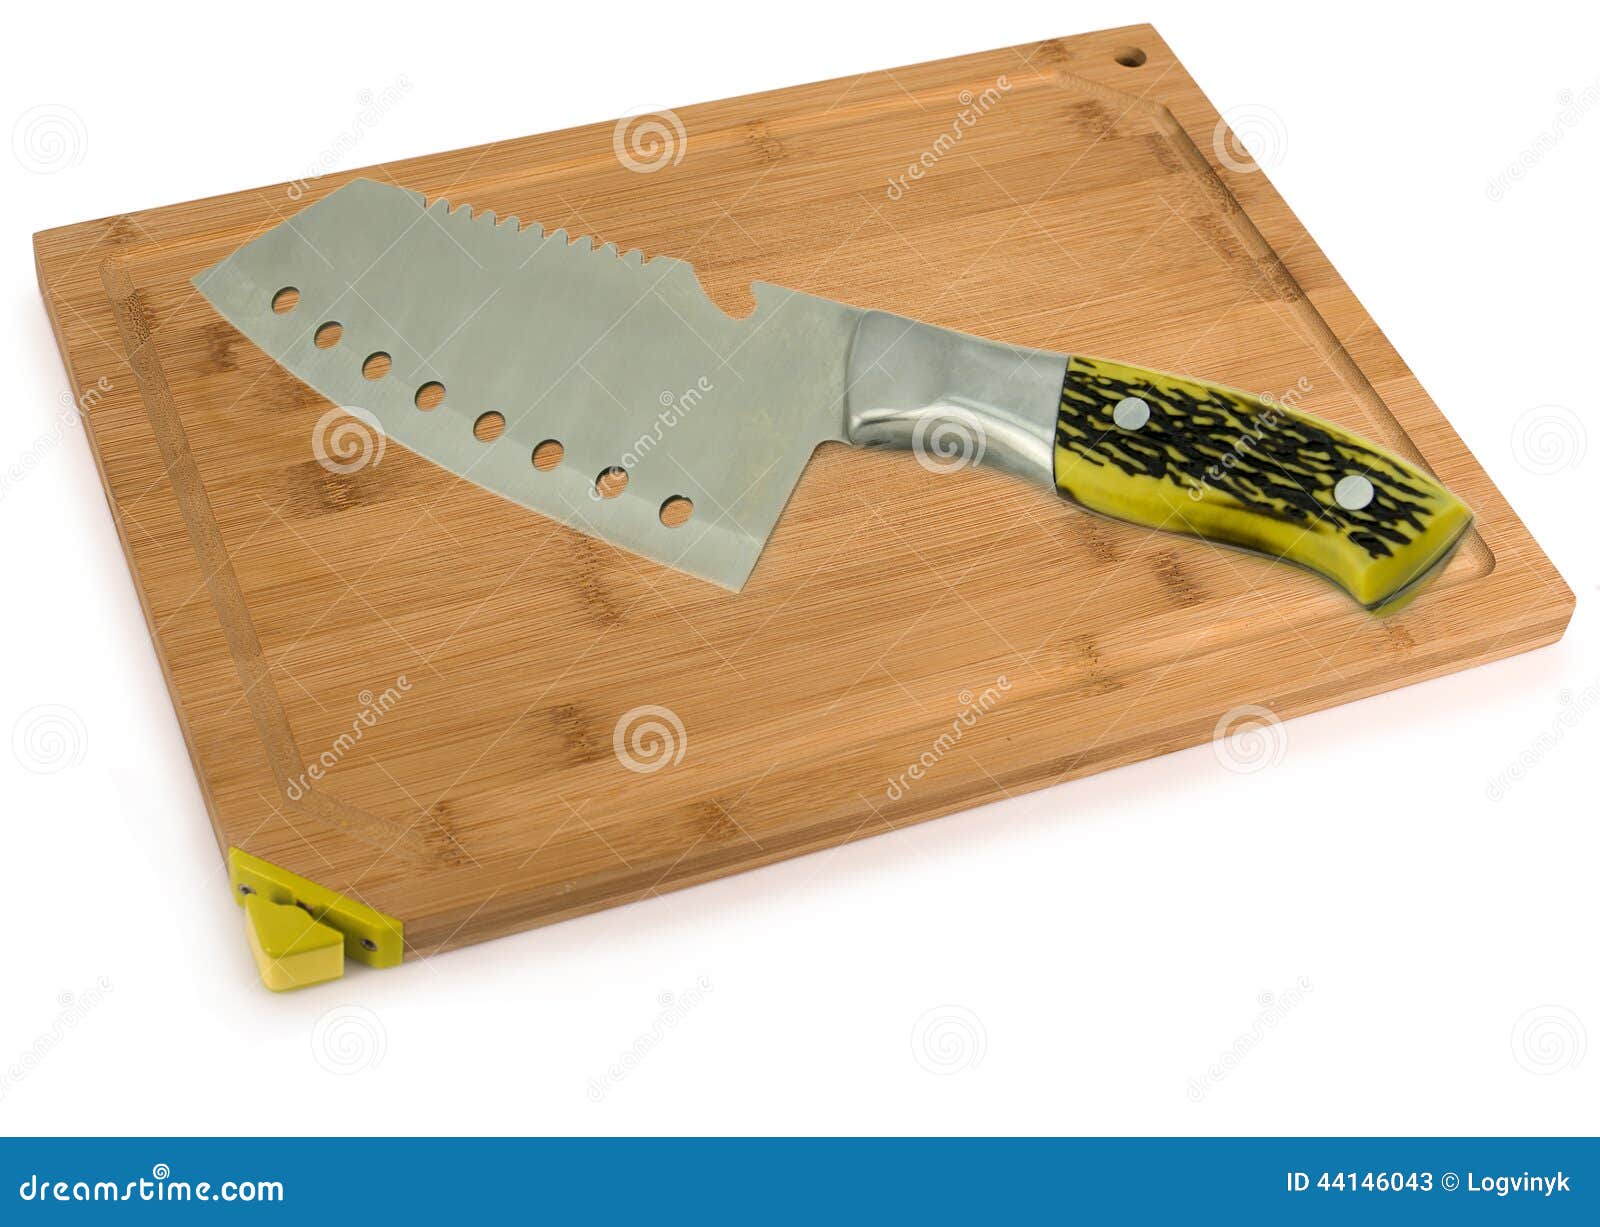 Поднимающее вверх разделочной доски и кухонного ножа близкое Для вашего. Поднимающее вверх разделочной доски и кухонного ножа близкое Для вашей коммерчески и редакционной пользы